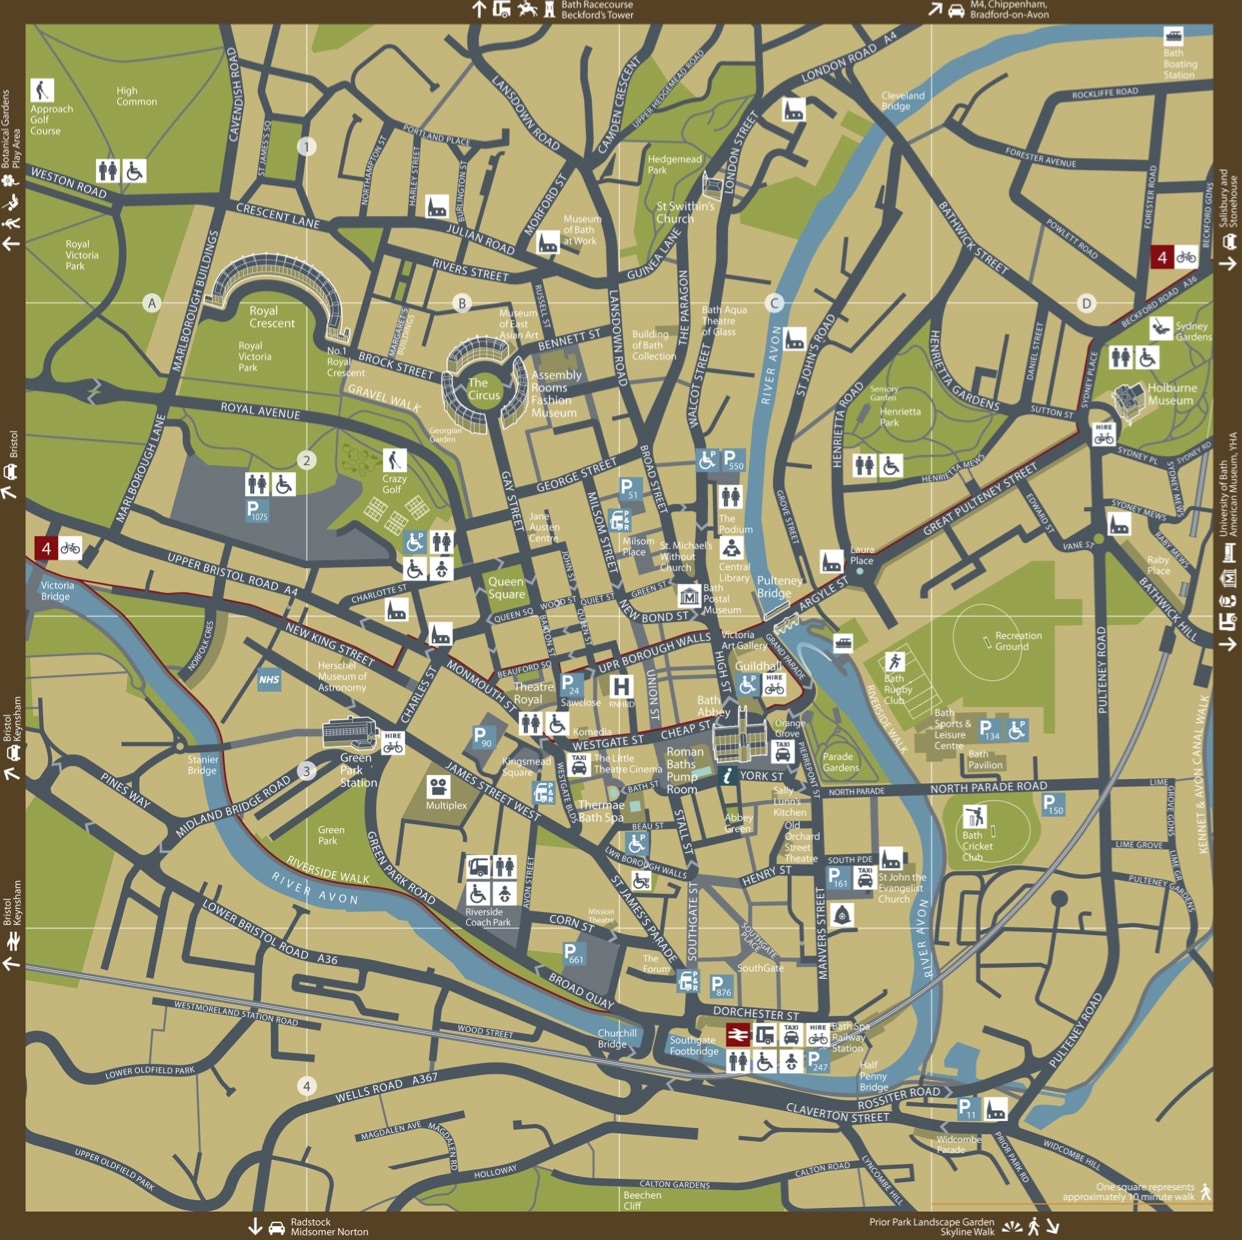 Bath City Centre Map